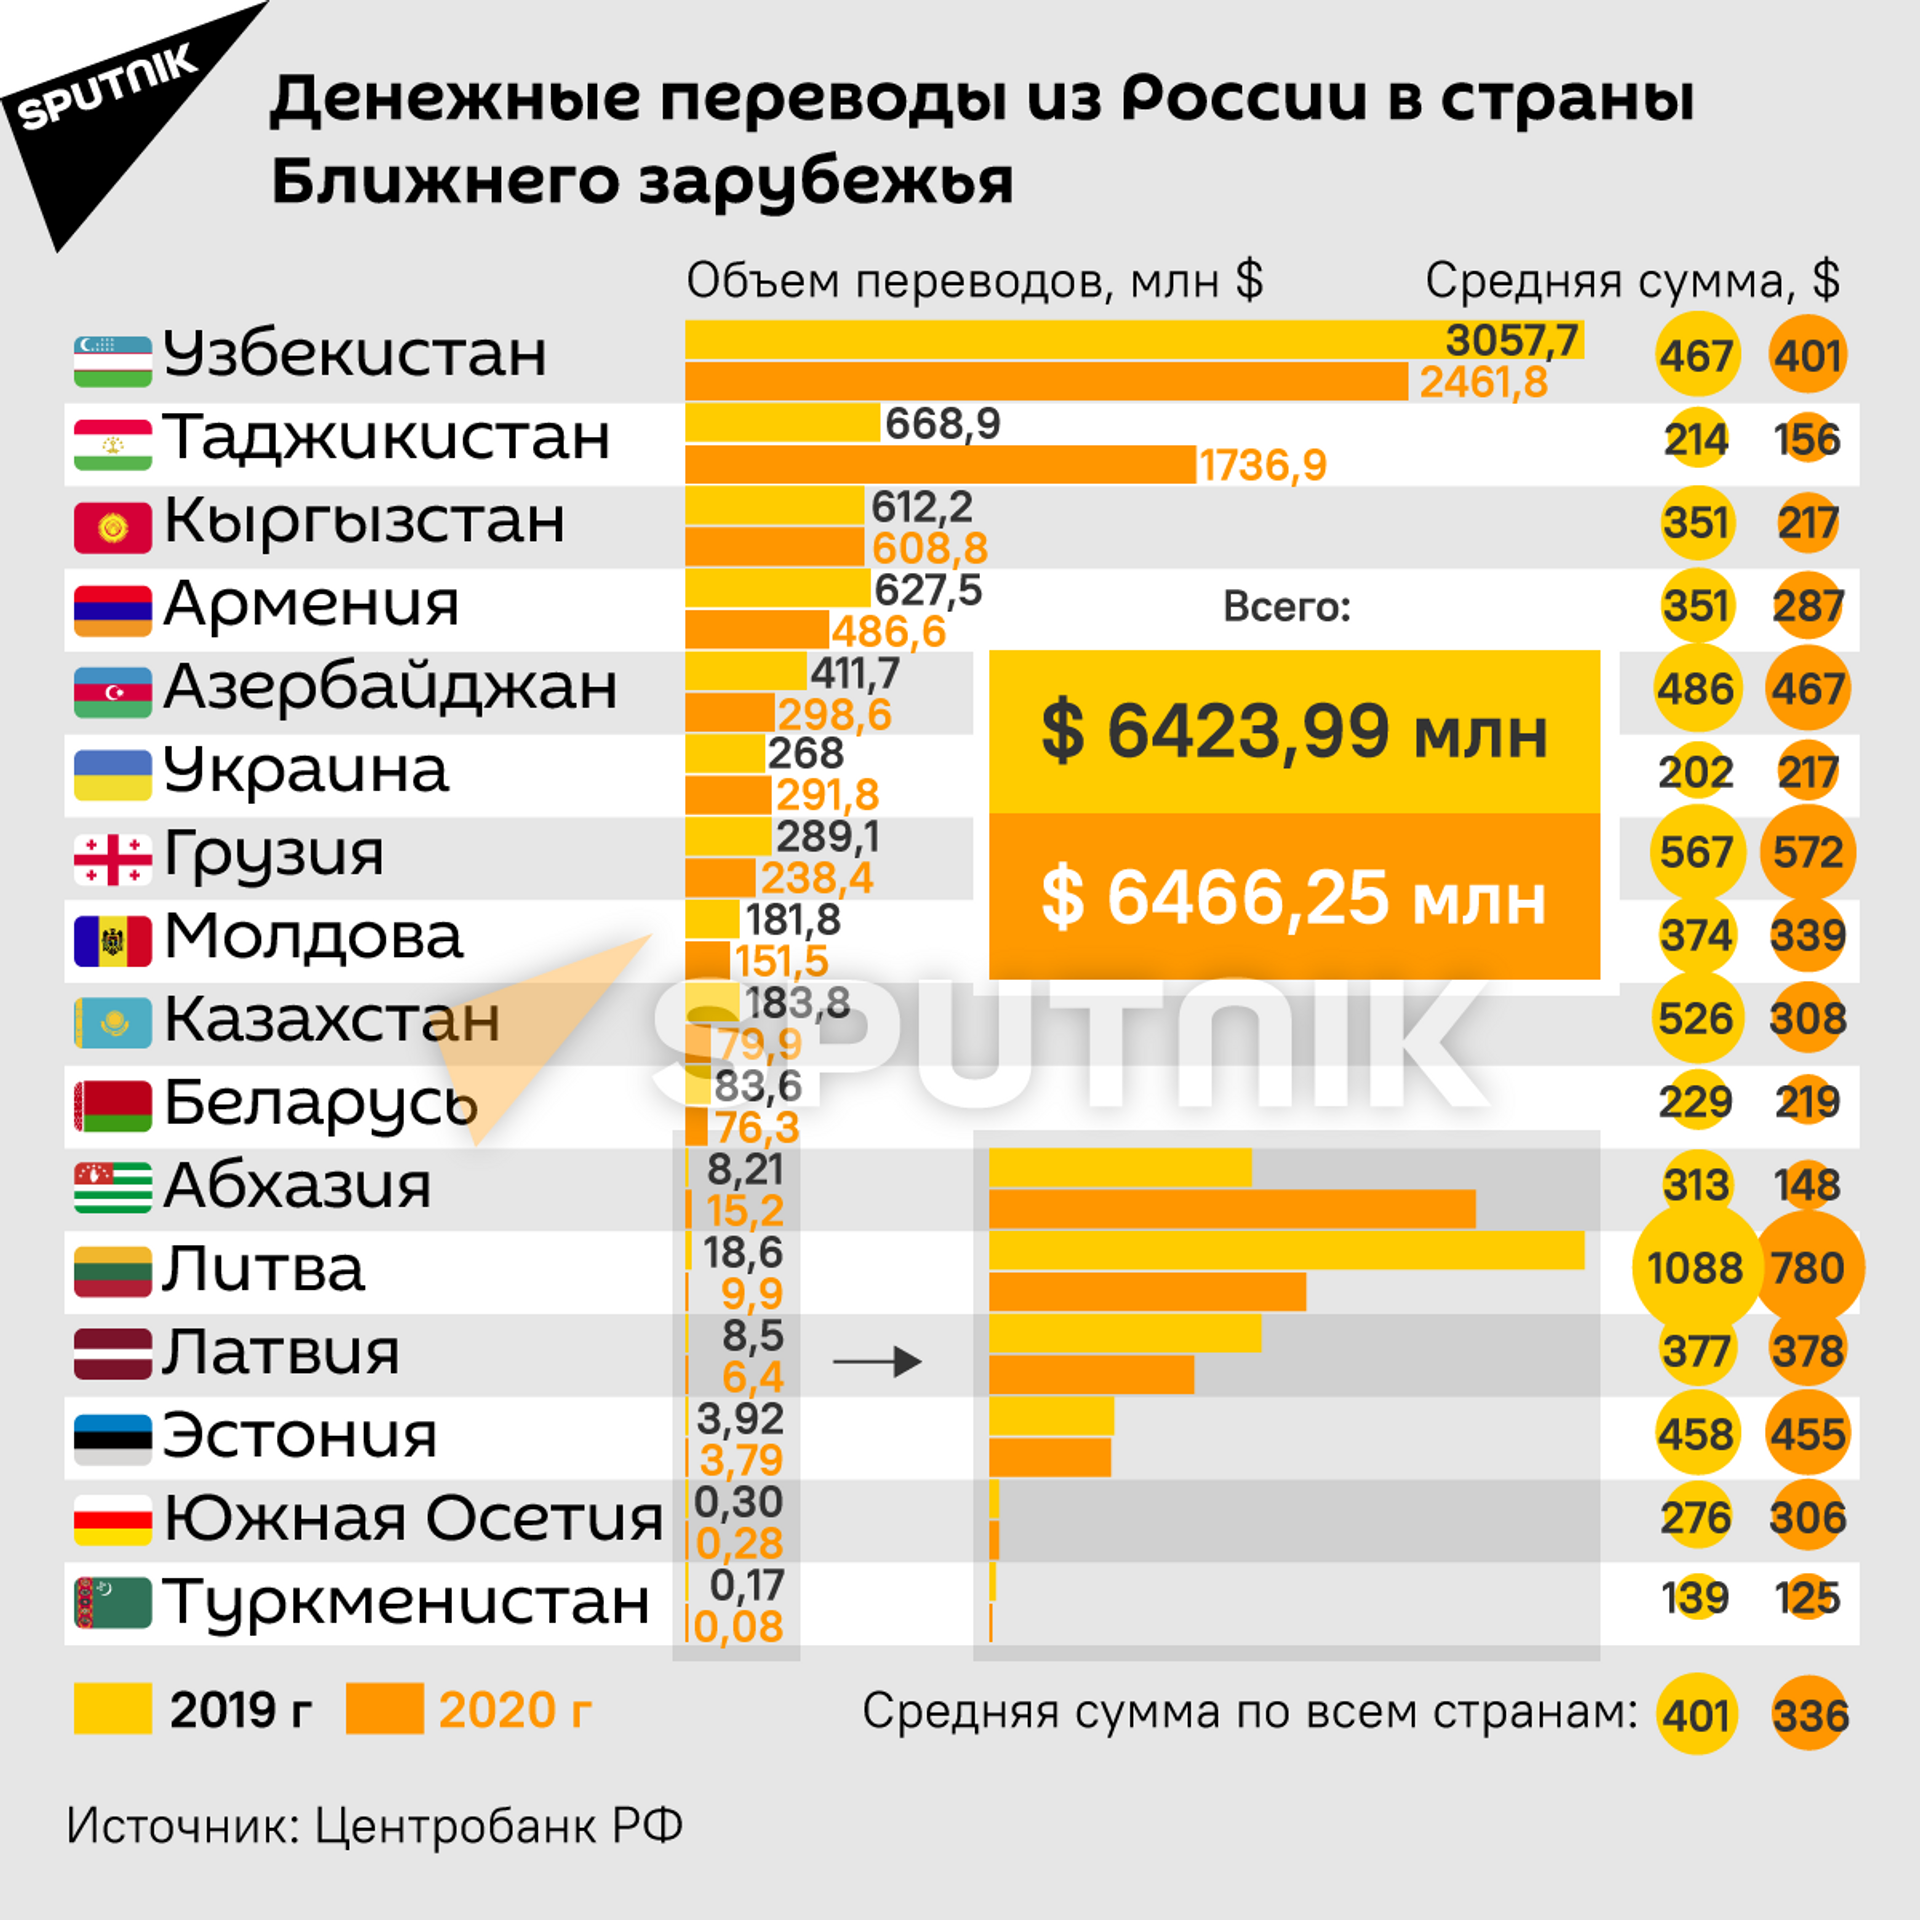 Переводы из России – самые выгодные в мире. Как мигранты спасают экономики стран СНГ - Sputnik Казахстан, 1920, 17.05.2021